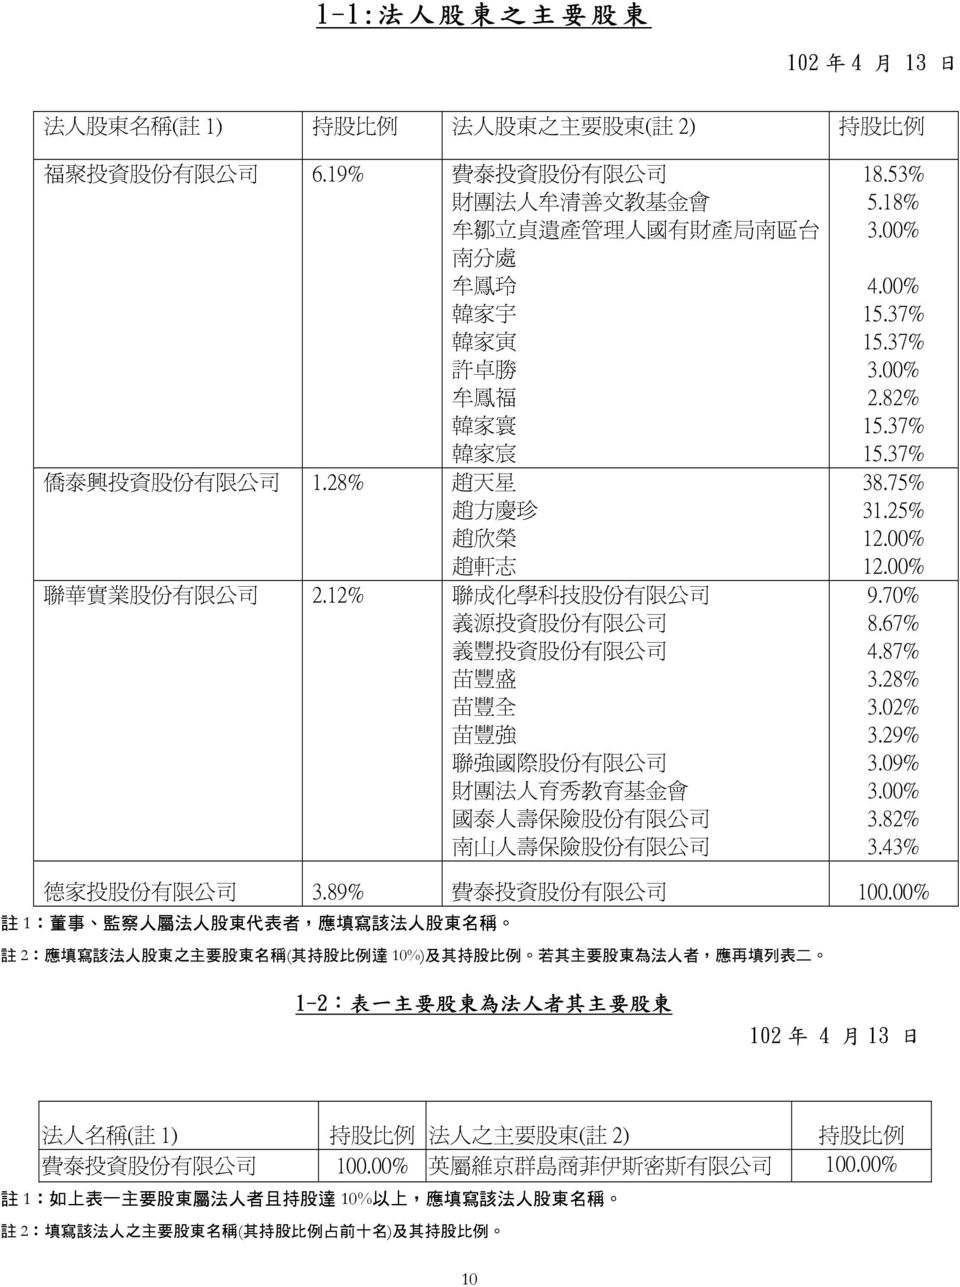 28% 趙 天 星 趙 方 慶 珍 趙 欣 榮 趙 軒 志 聯 華 實 業 股 份 有 限 公 司 2.